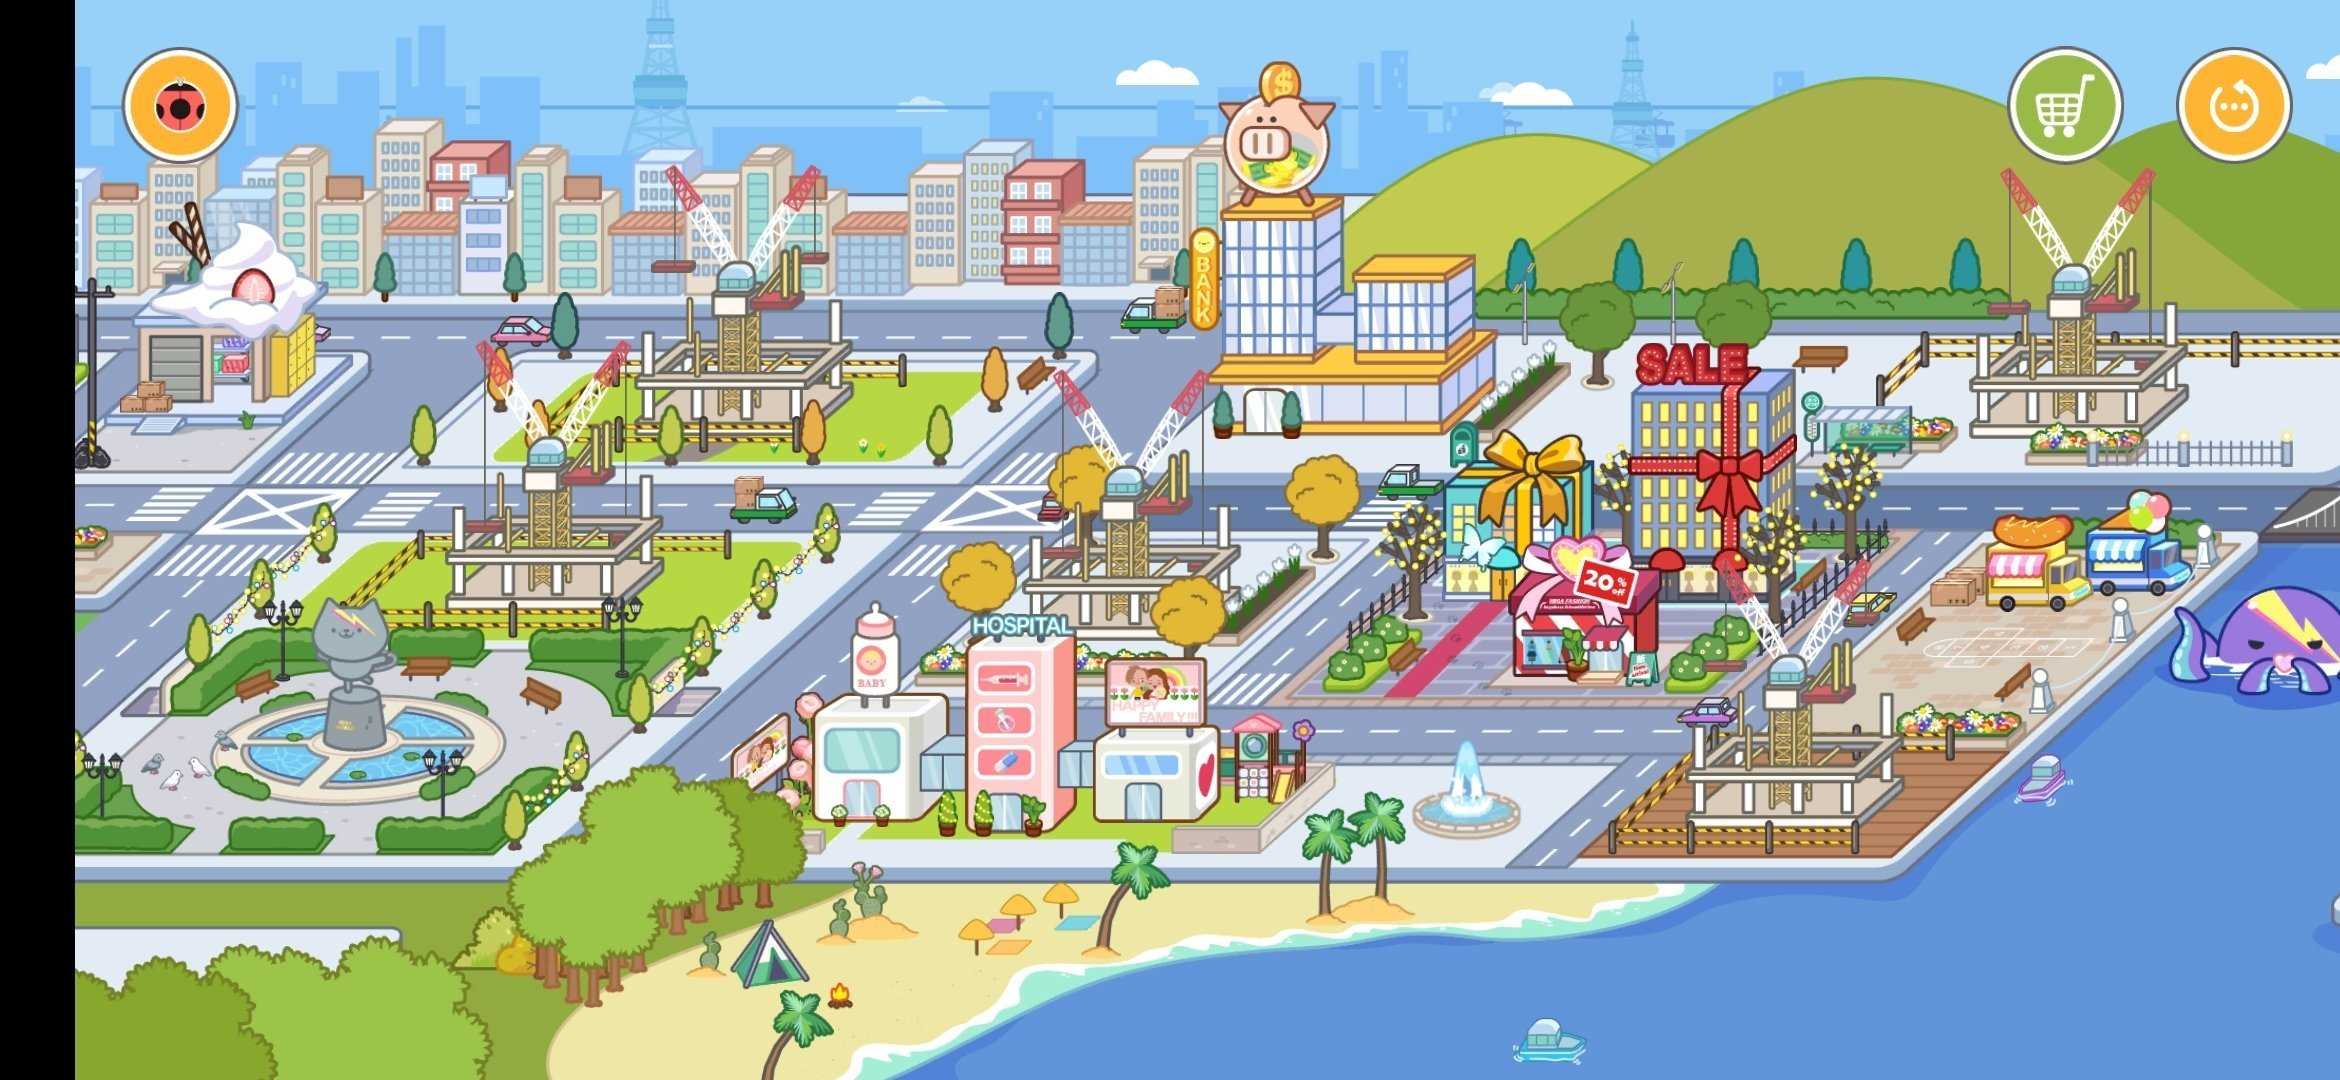 米加小镇世界2020年更新版